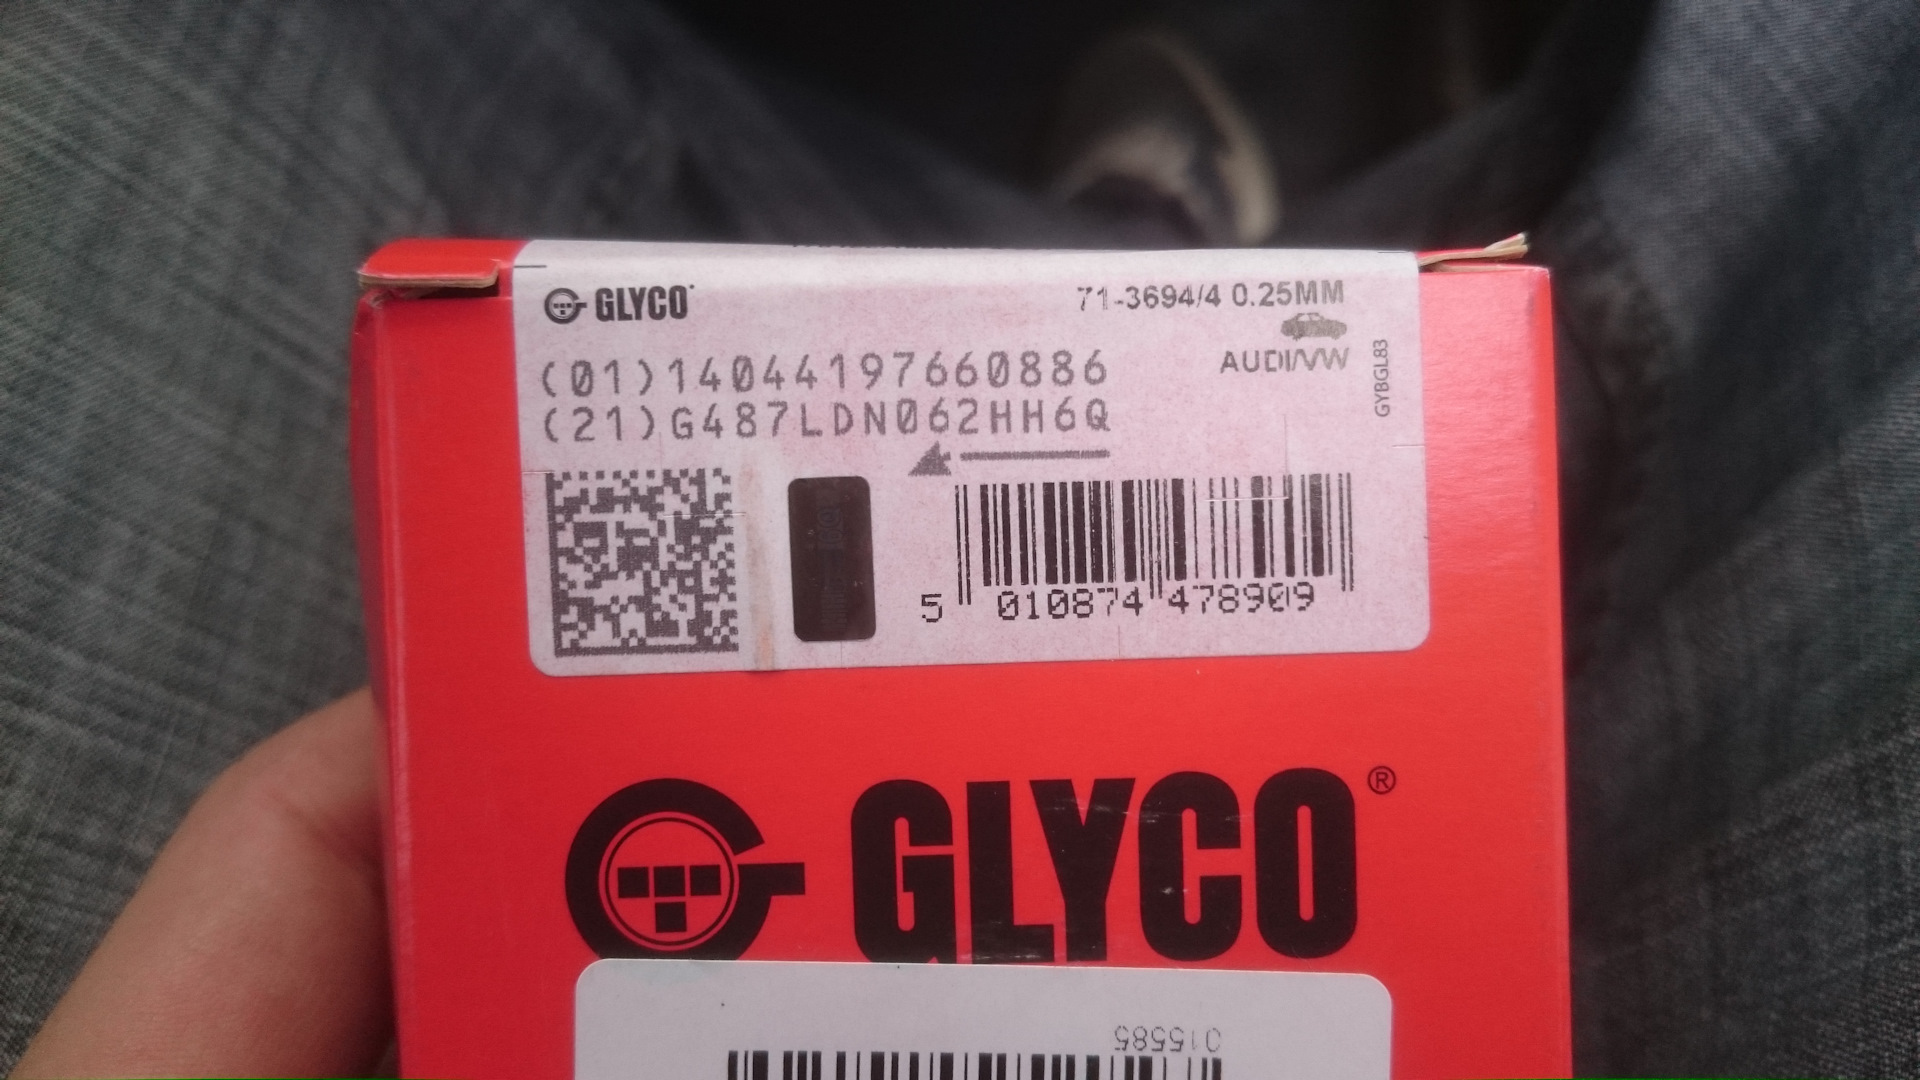 0 025 мм. GLYCO 71-3694/4 STD. GLYCO номер: 71-3694/4 STD. 71-3694/4 0.25Mm. 71-4118/4 0.25Mm.